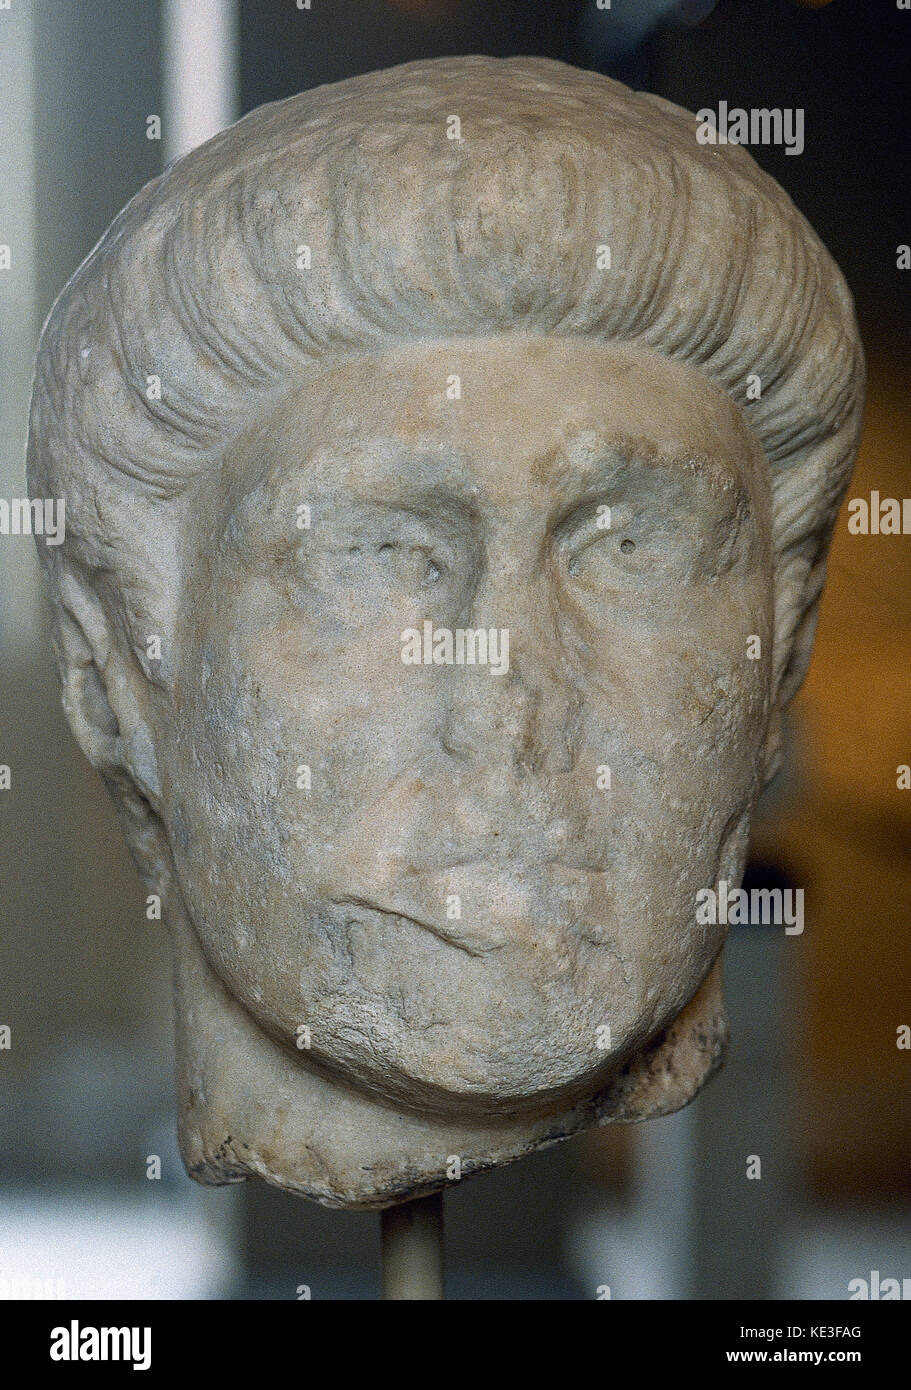 Constantin le Grand (272-337 AD). 57e empereur de l'empire romain. musée archéologique d'istanbul musées (Musée archéologique). La Turquie. Banque D'Images